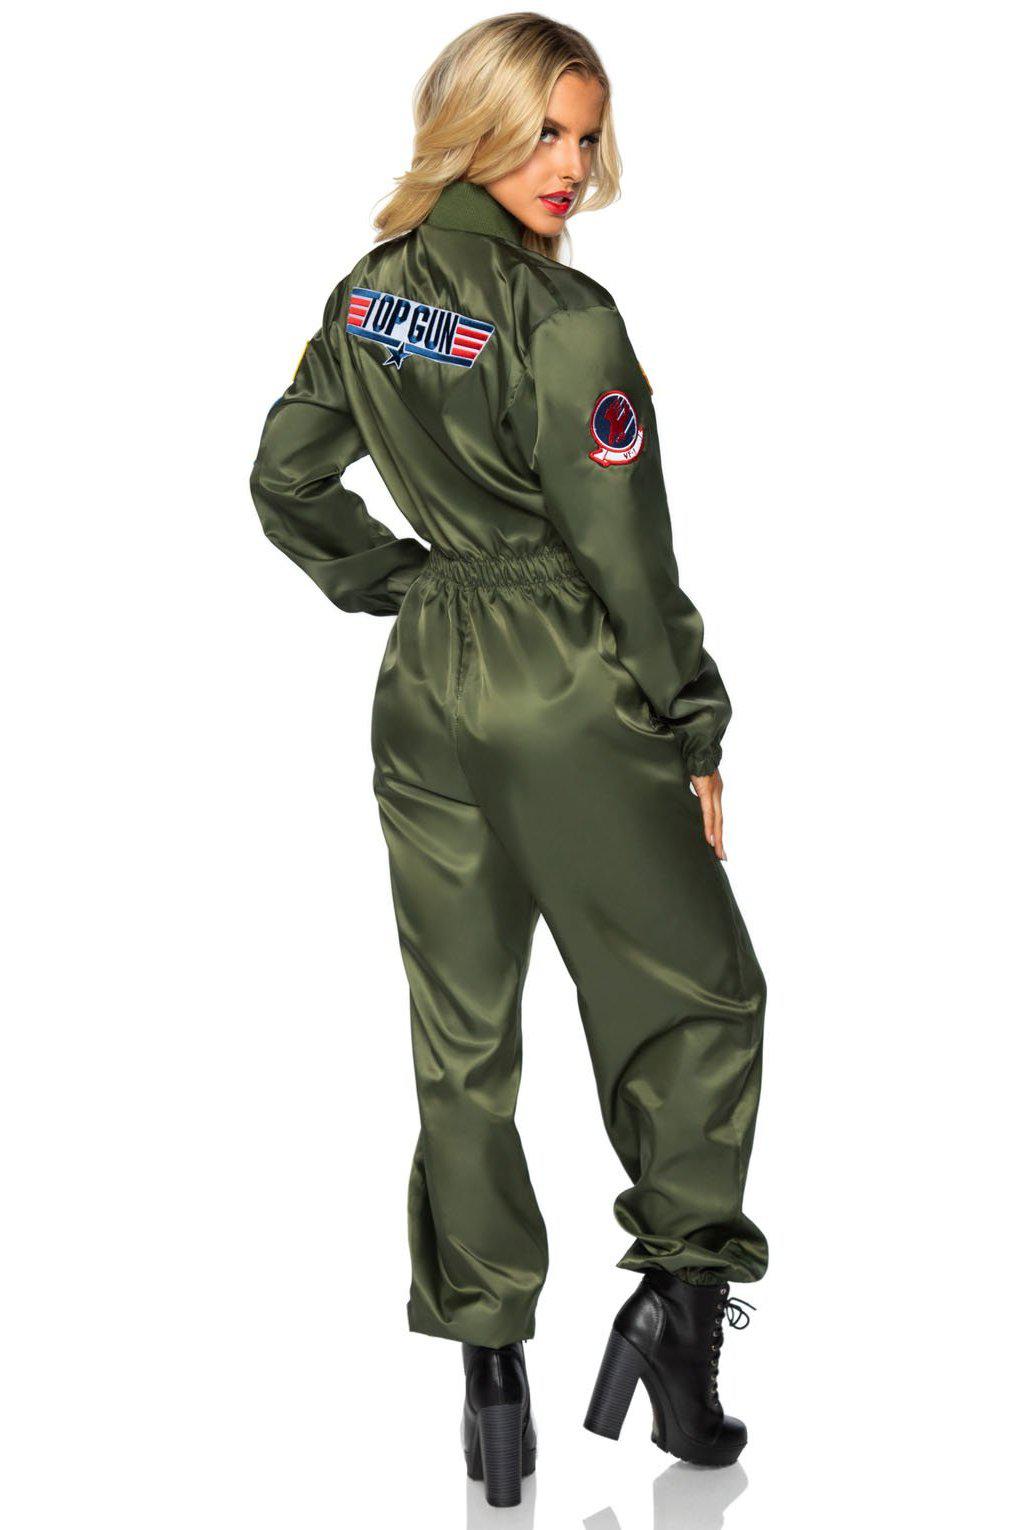 Top Gun Costumes, Women's Top Gun Flight Suits